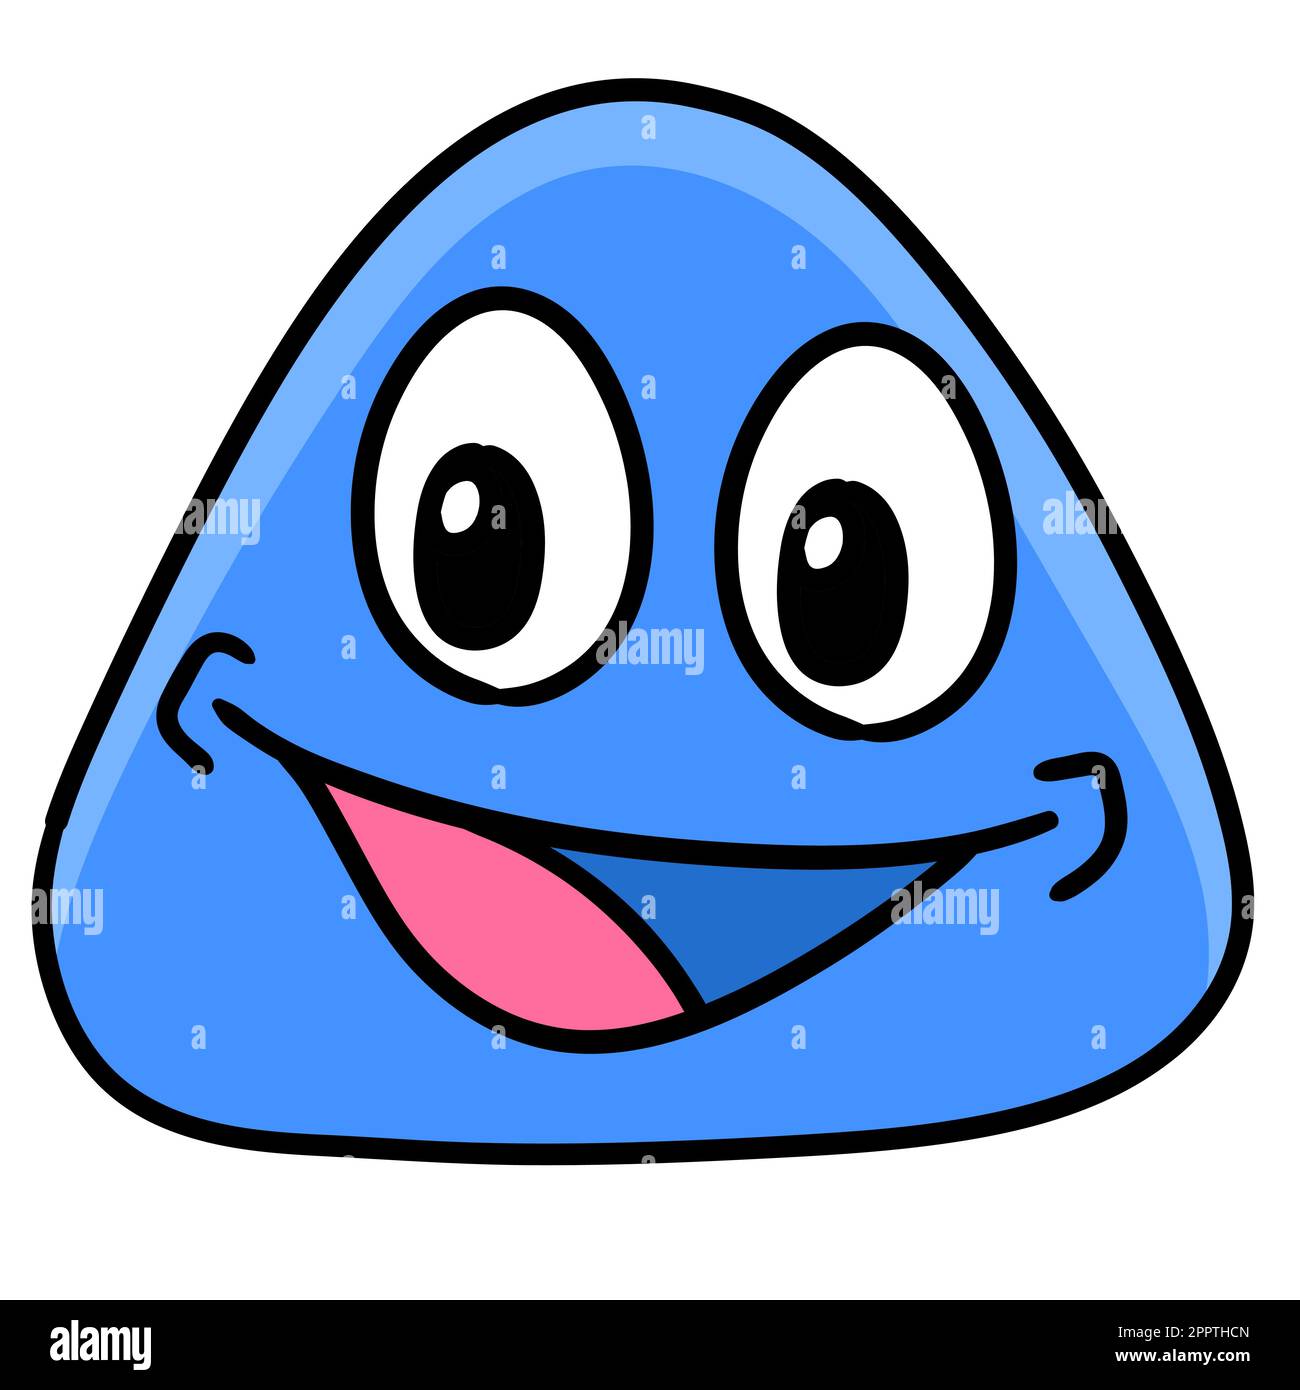 Cartoon Dreieckskopf Emoticon mit fröhlichem lächelndem Gesichtsausdruck, Doodle Icon Bild Kawaii Stock Vektor